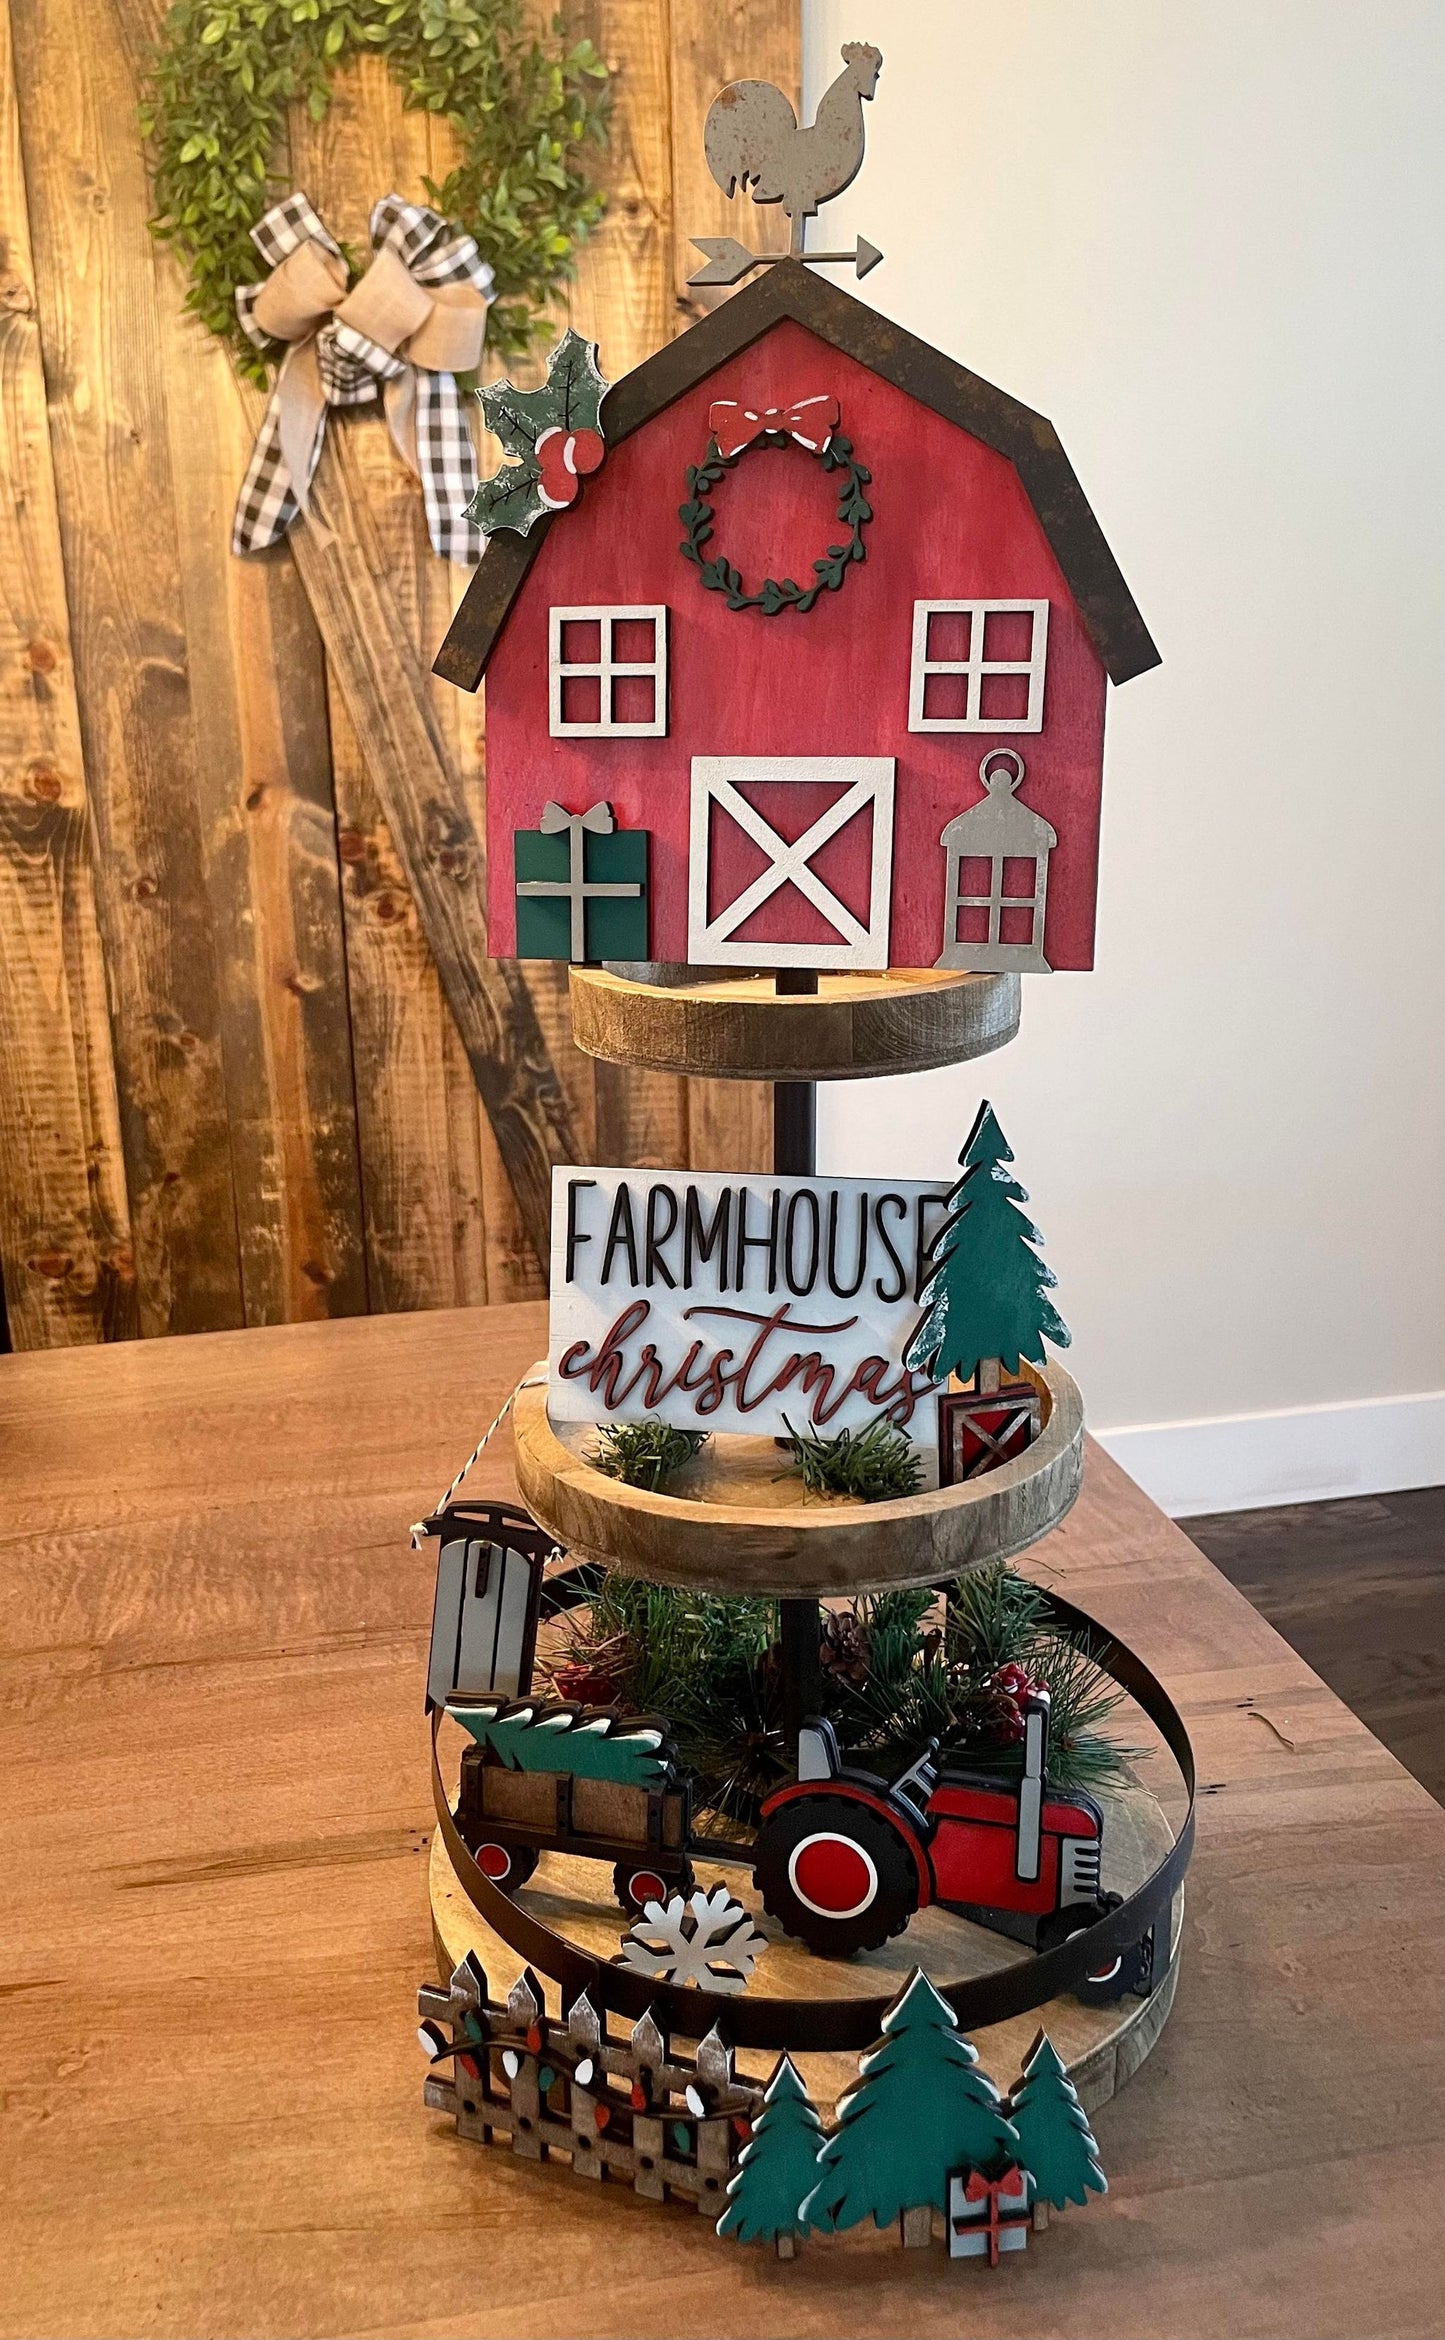 3D Tiered Tray Decor - Farmhouse Christmas